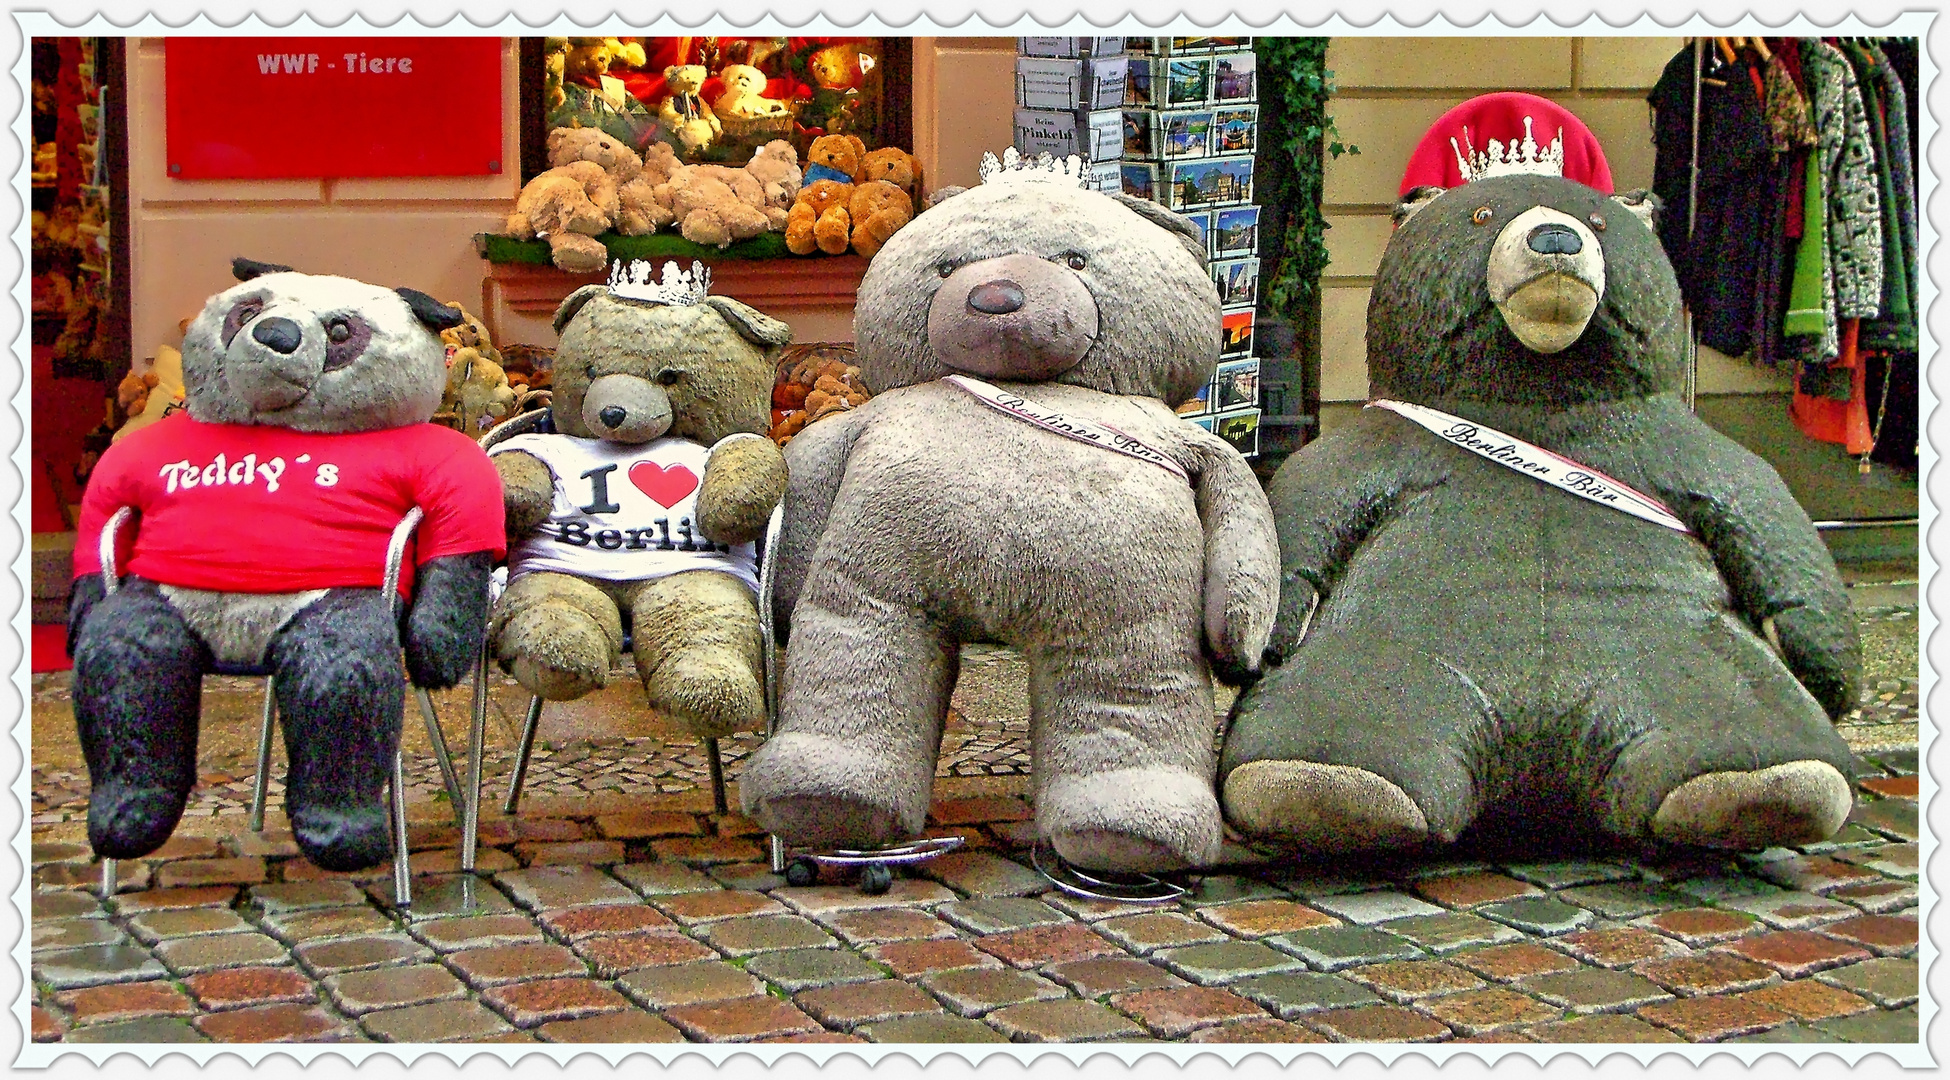 Das gemütliche Berliner Bären-Quartett